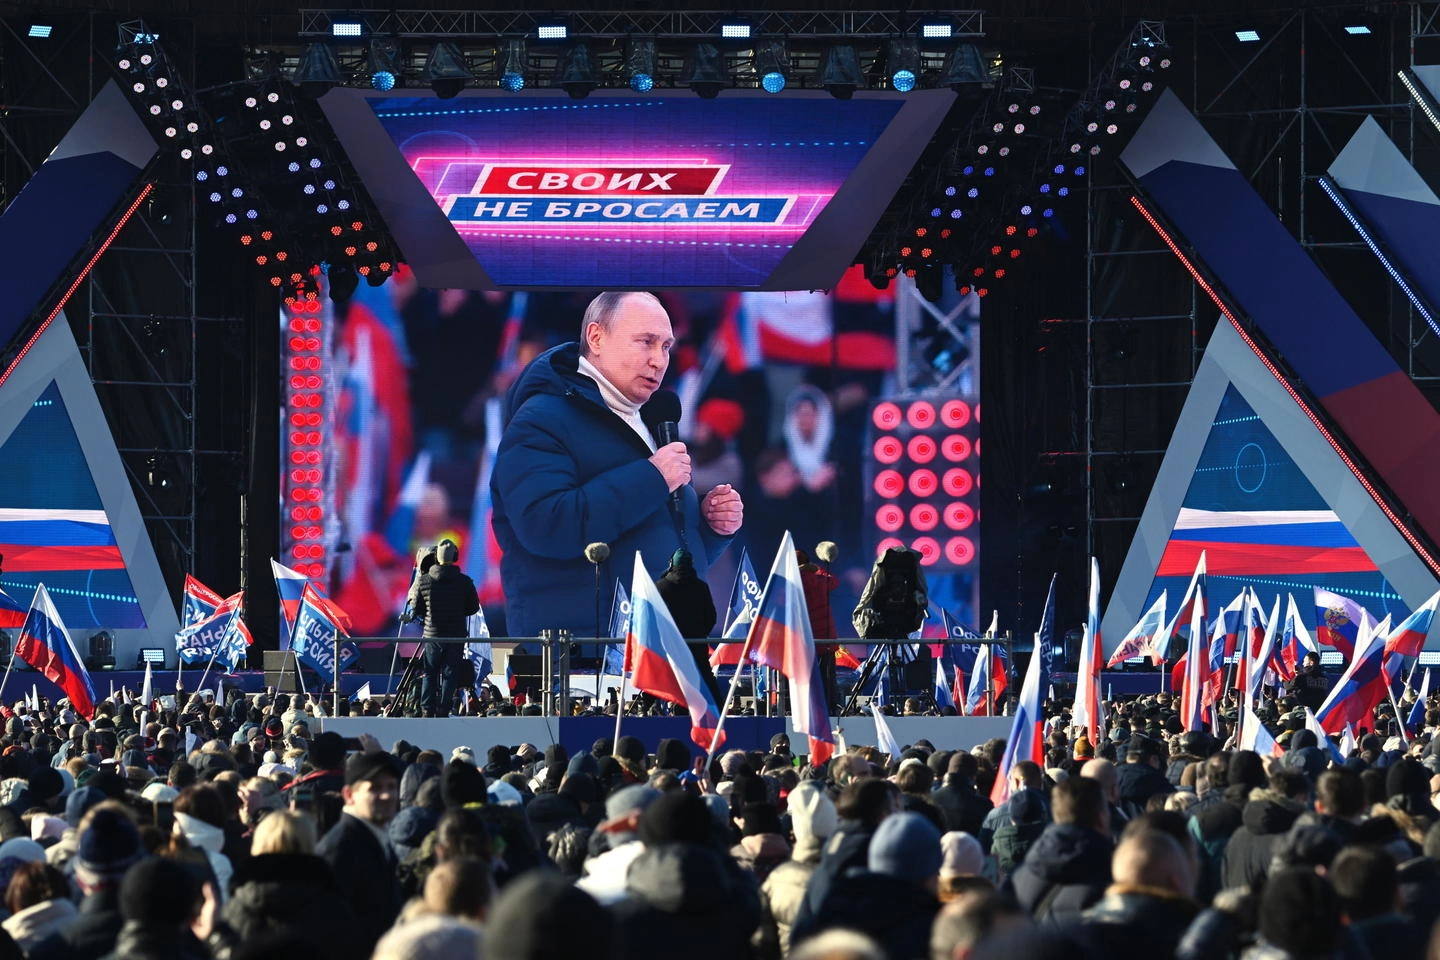 Putin nel discorso alla nazione (Ansa)